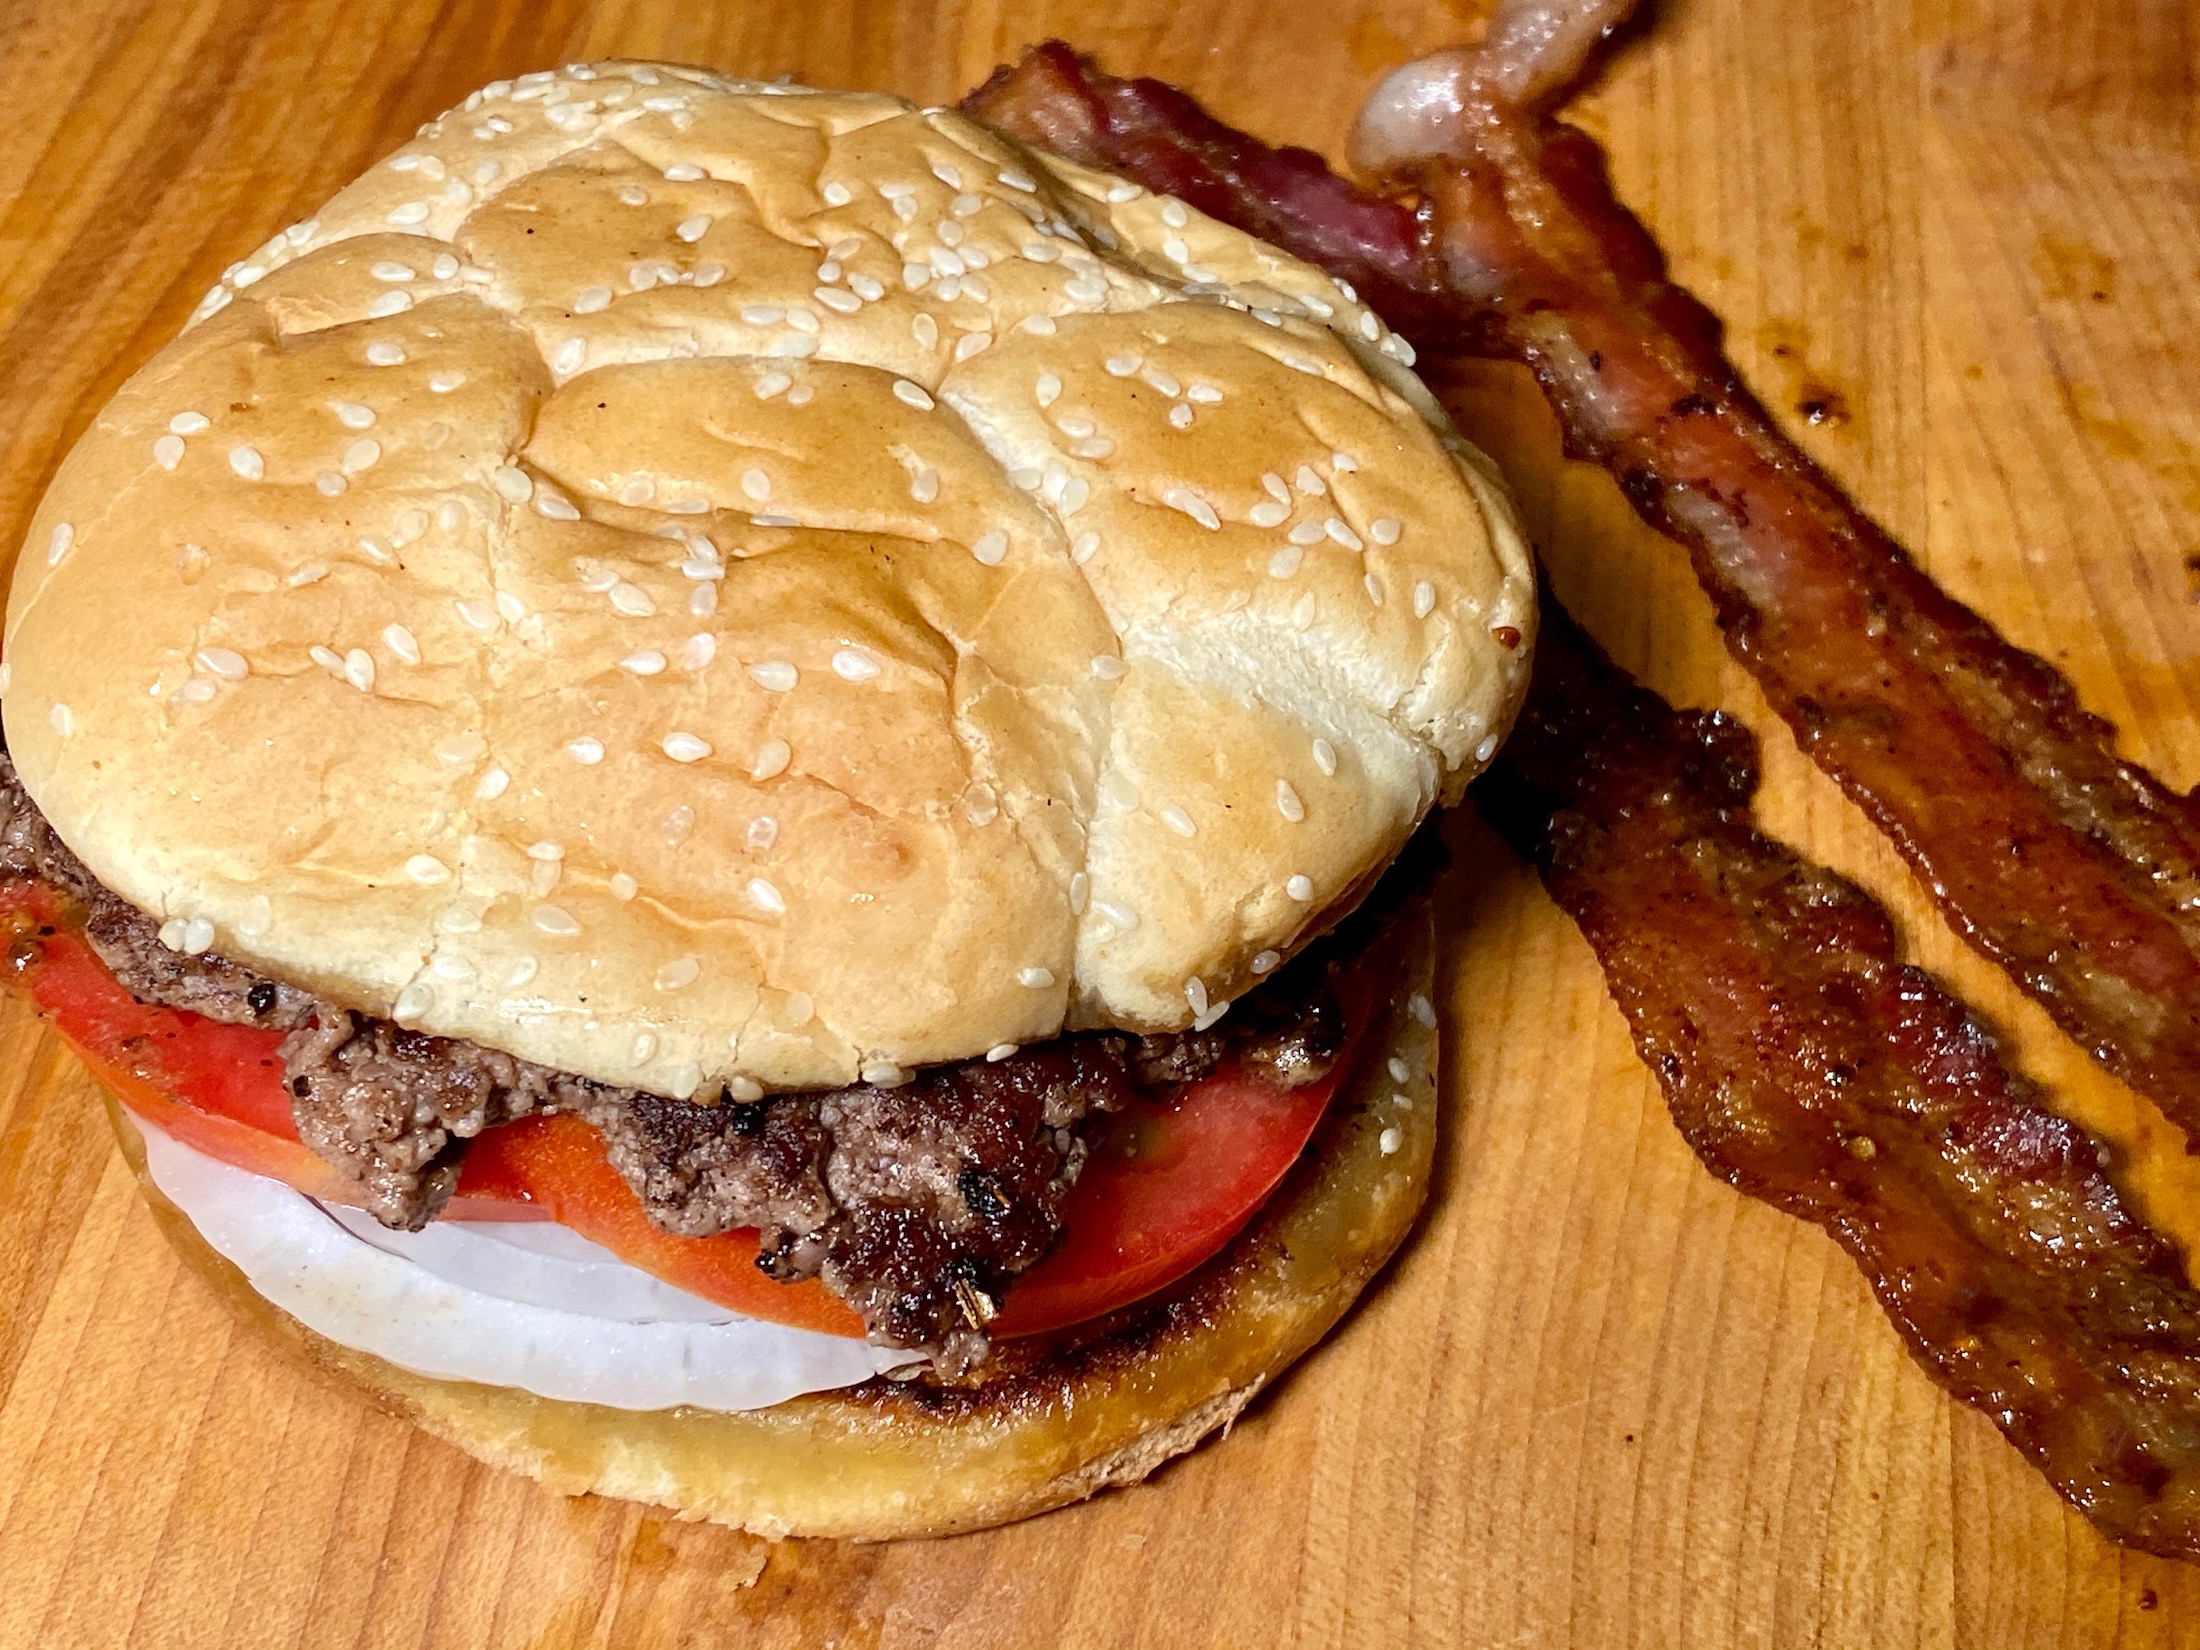 smash burger on bun with bacon on side